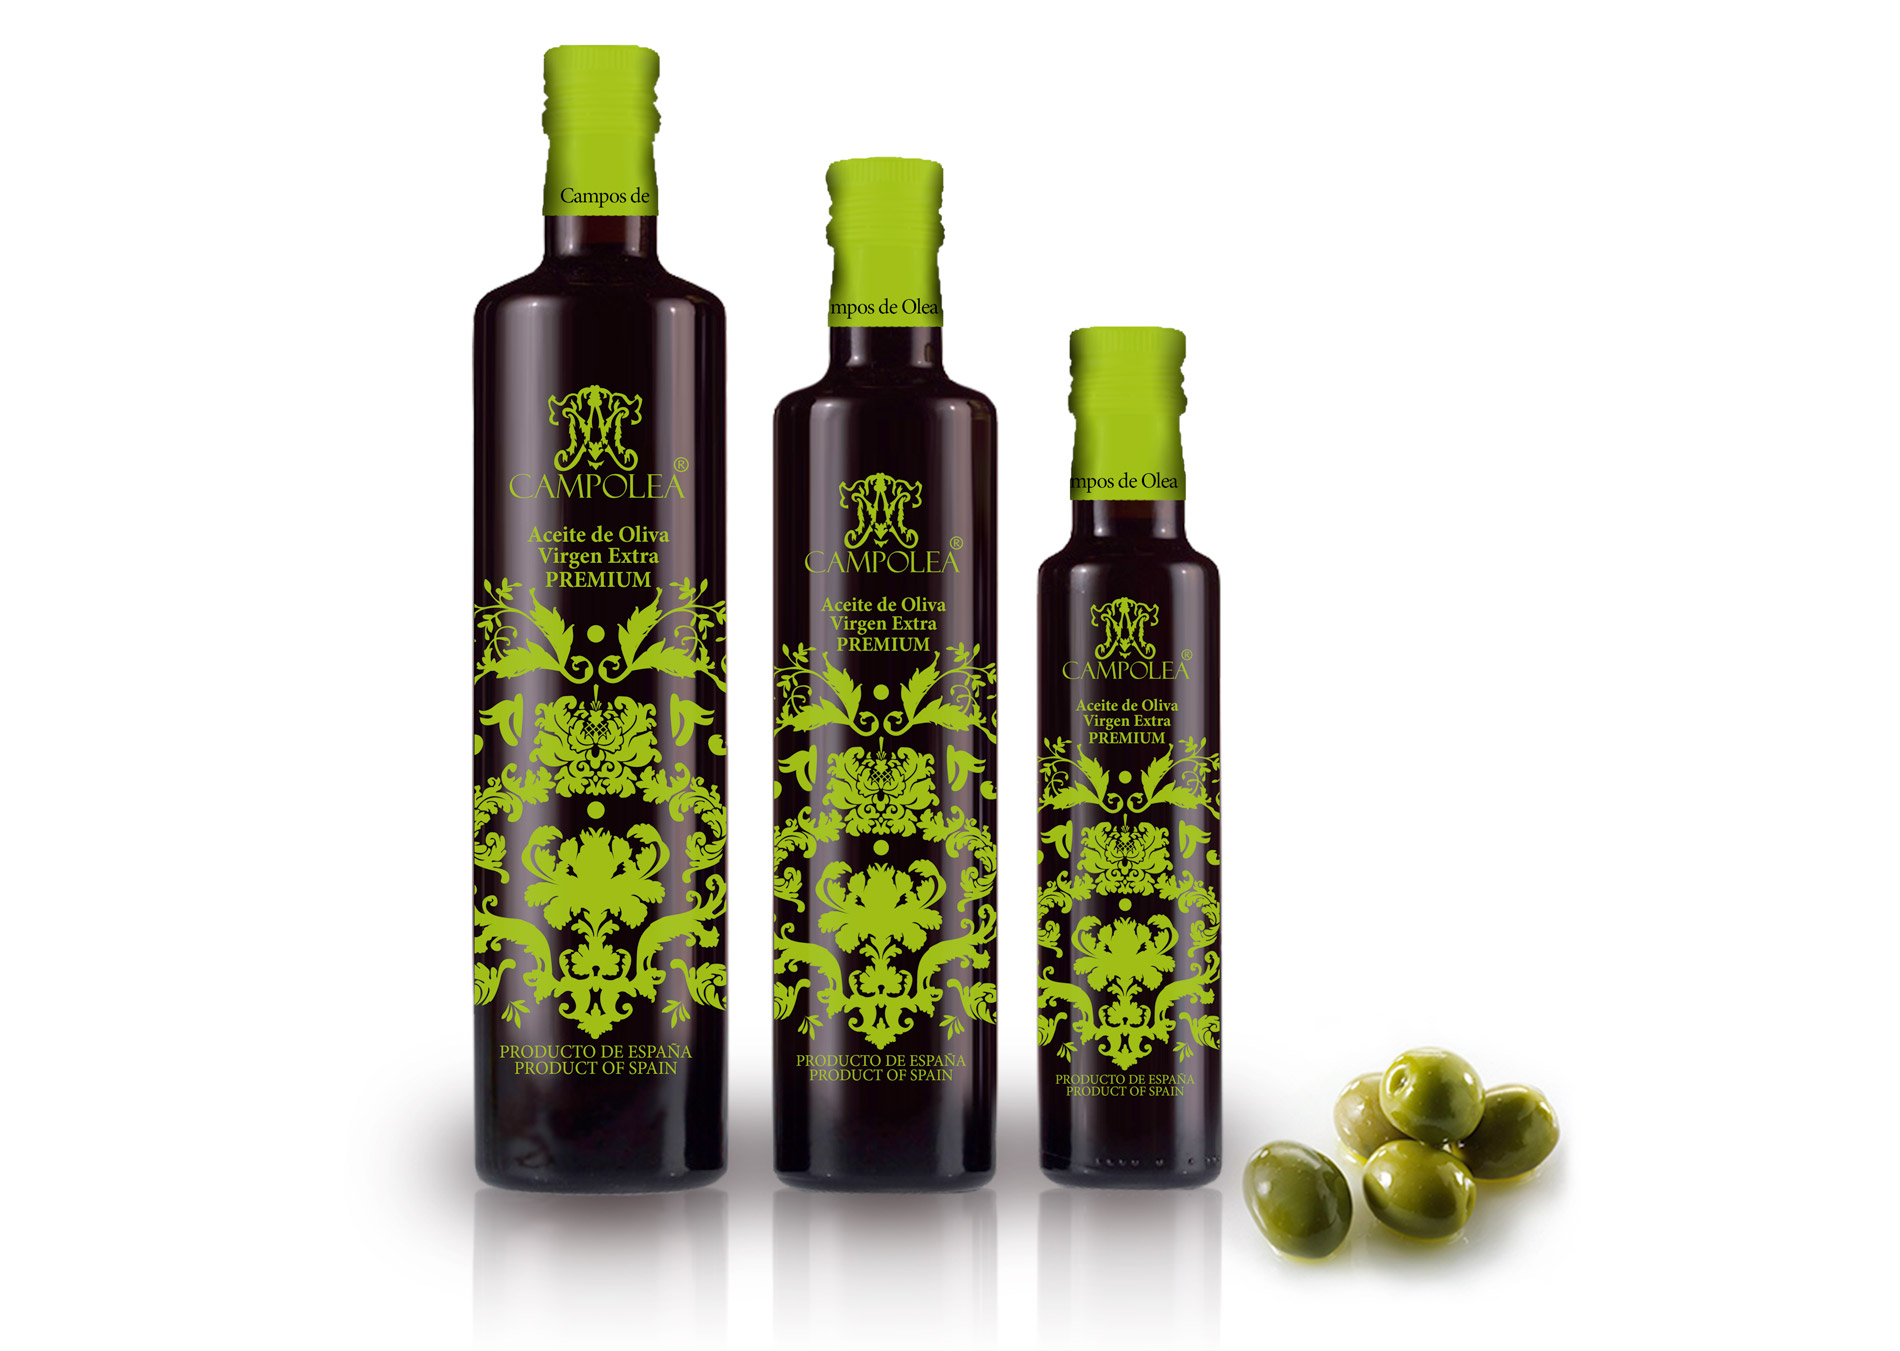 Diseño gráfico y creativo de etiquetas de aceite de oliva virgen extra para la marca CAMPOLEA